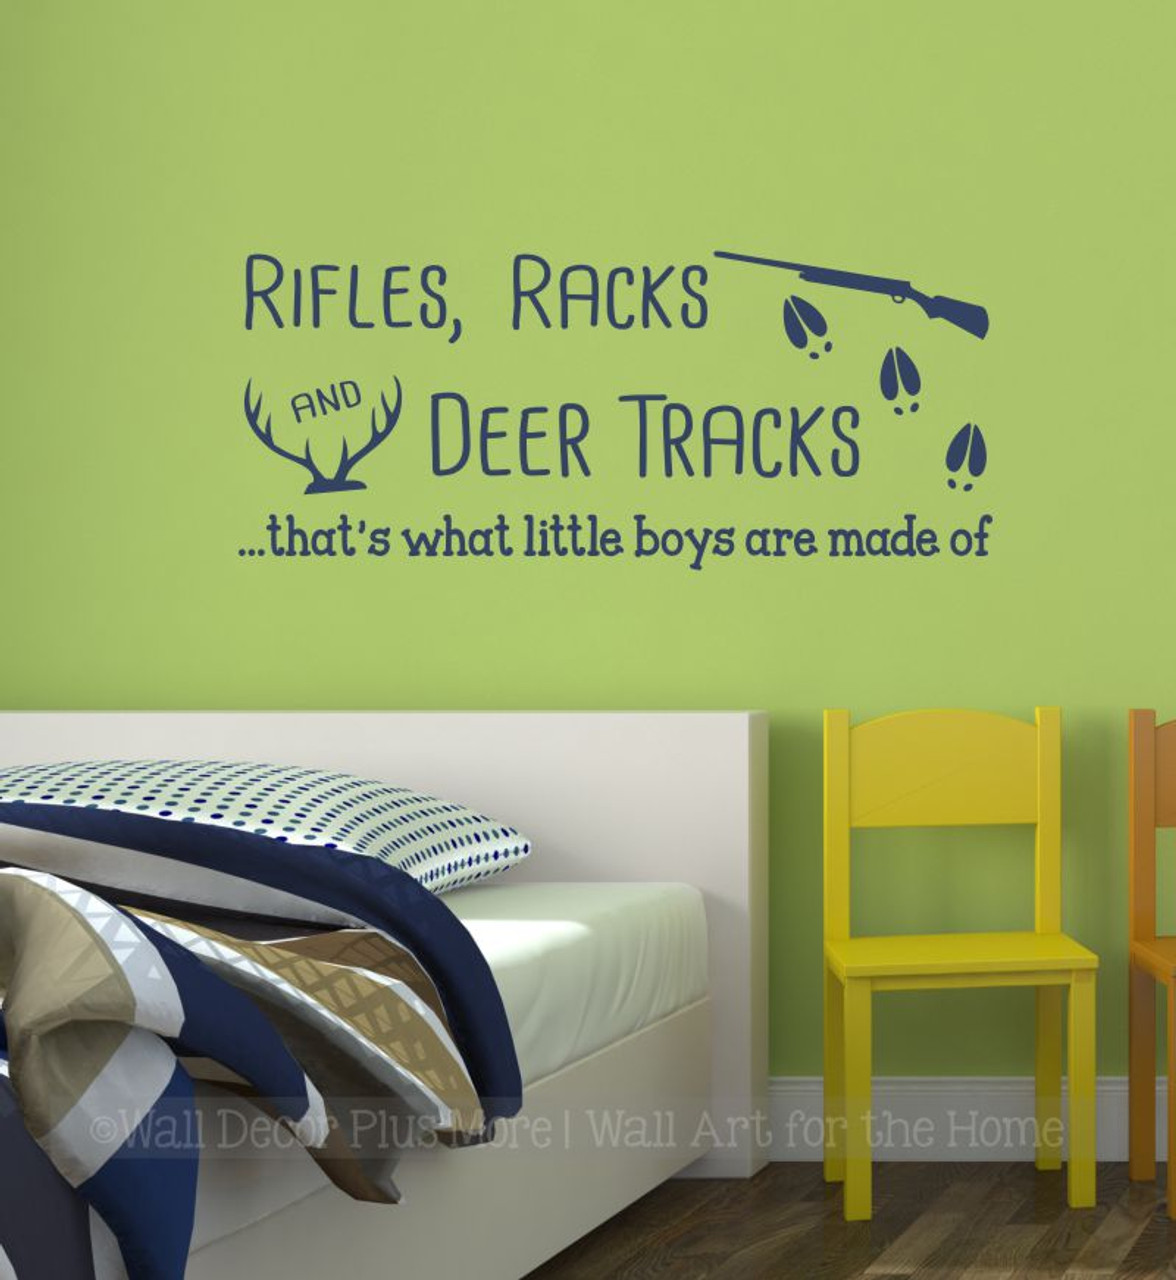 Rifle Racks Deer Track Little Boys Made Of Wall Decal Sticker Kids